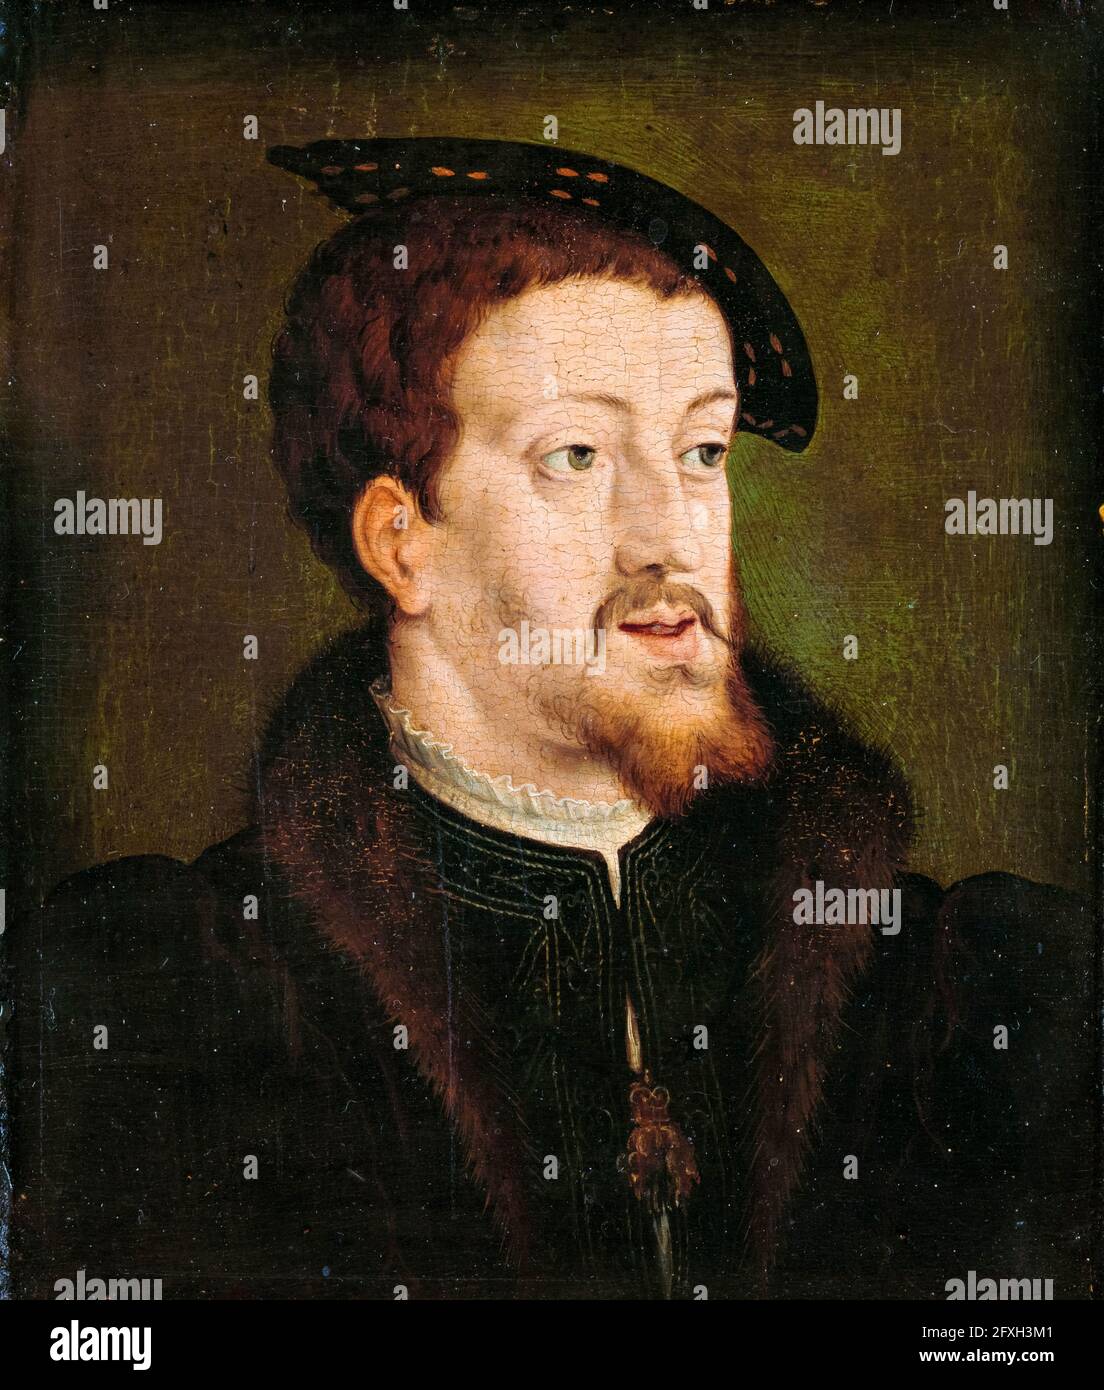 Charles V (1500-1558) Saint empereur romain 1519-1556, portrait après Jan Cornelisz Vermeyen, vers 1530 Banque D'Images